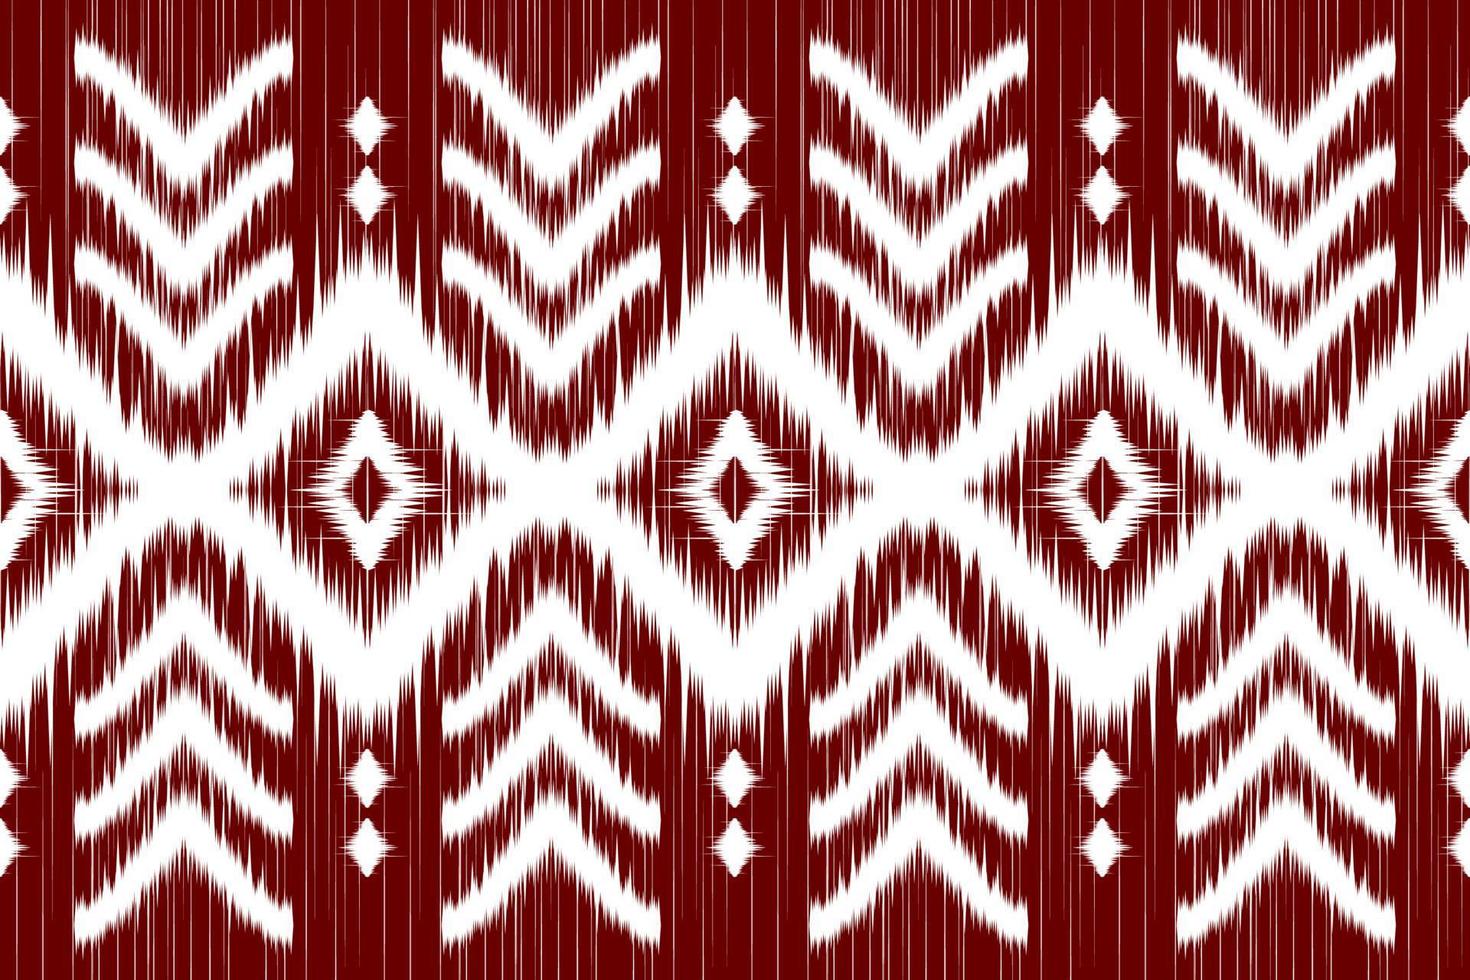 tappeto etnico ikat arte. geometrico senza soluzione di continuità modello nel tribale. messicano stile. vettore